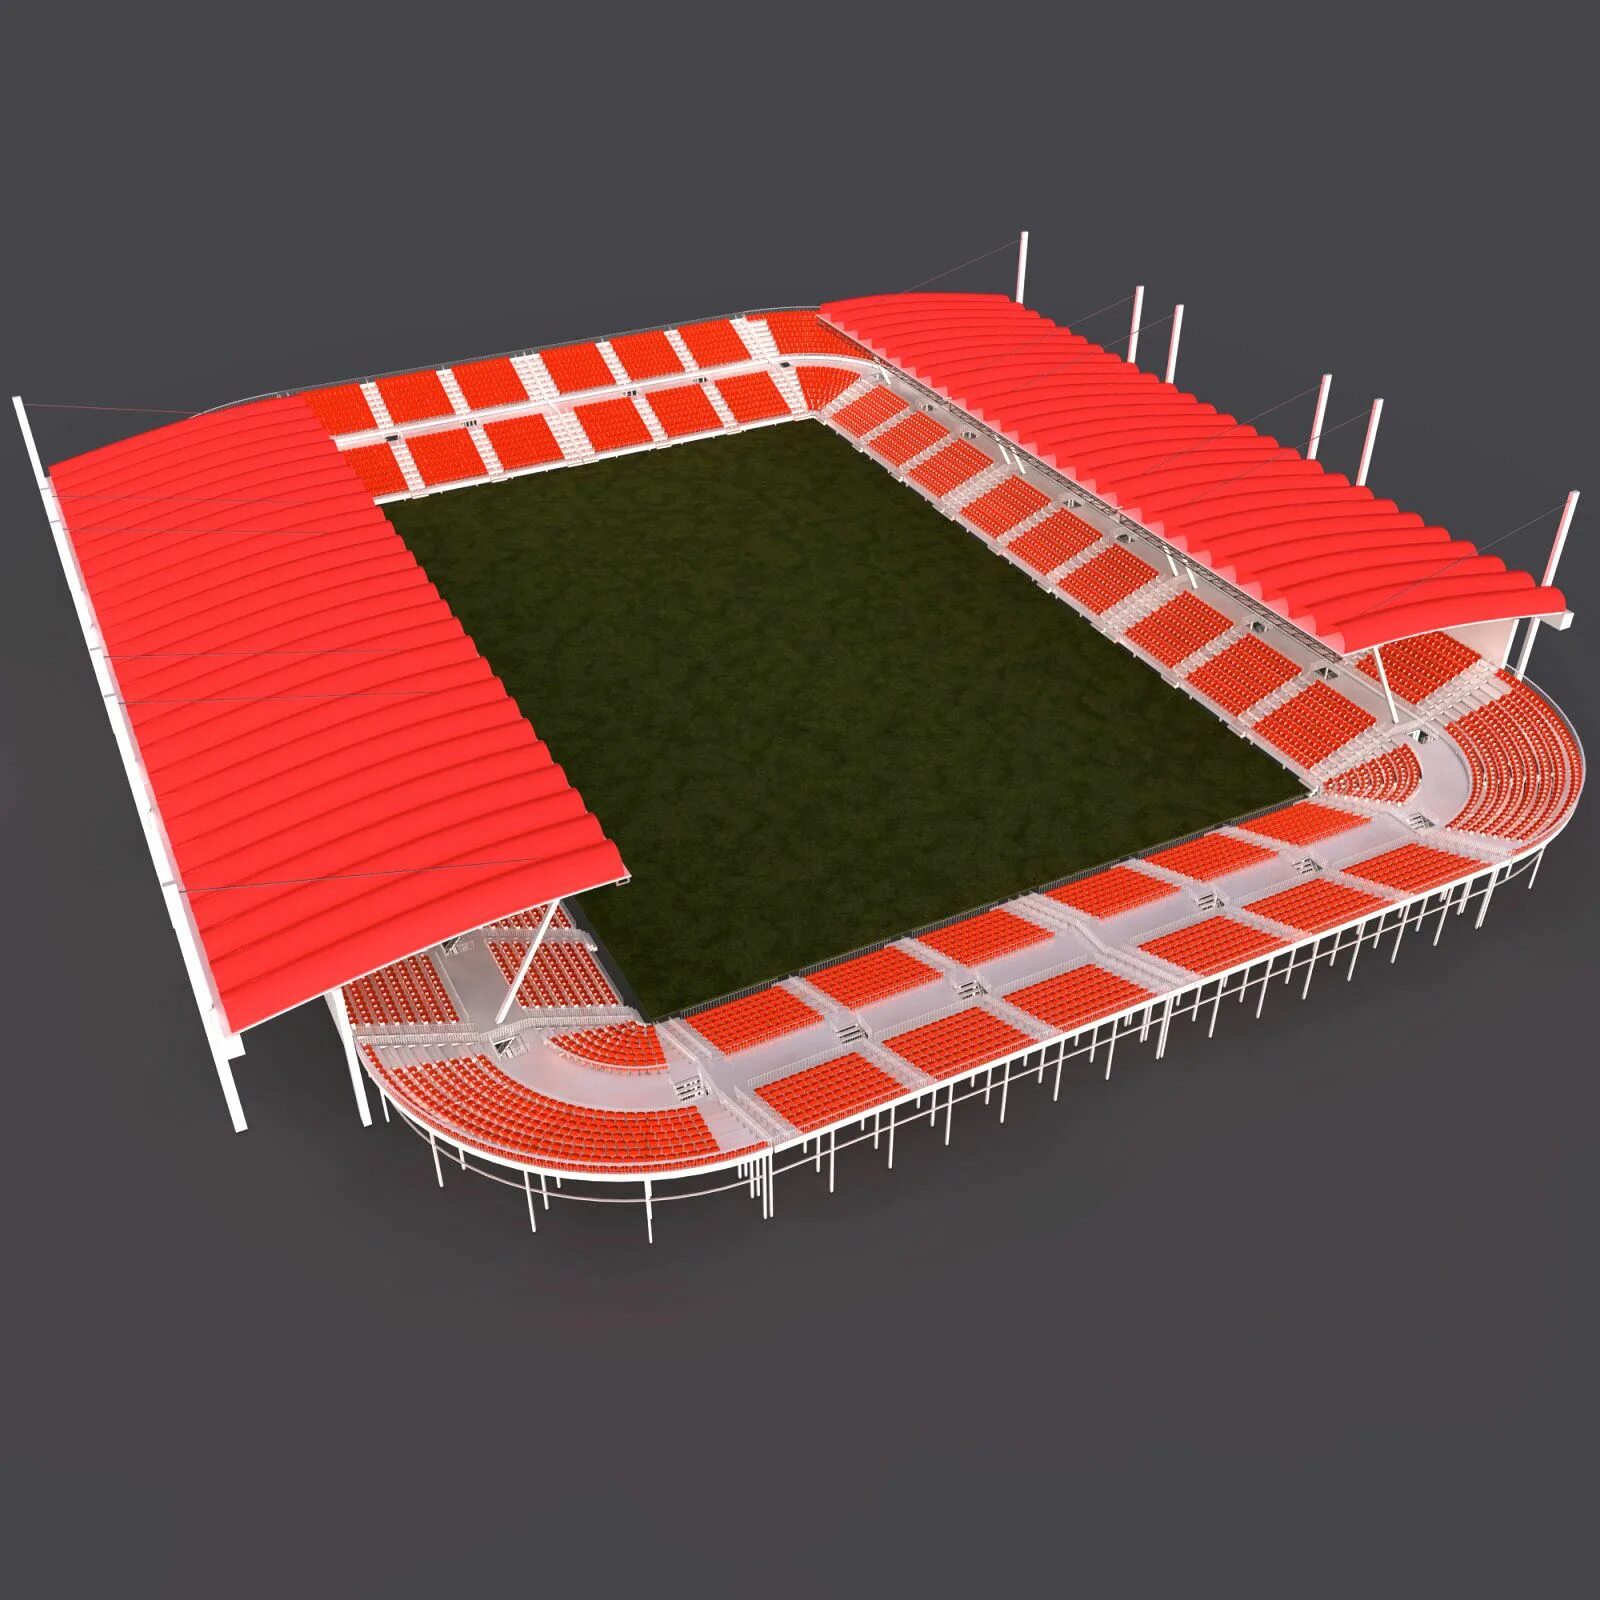 3 д стадионы. Арена 3д модель. Стадион 3d модель. Макет стадиона. Объемная модель стадиона.